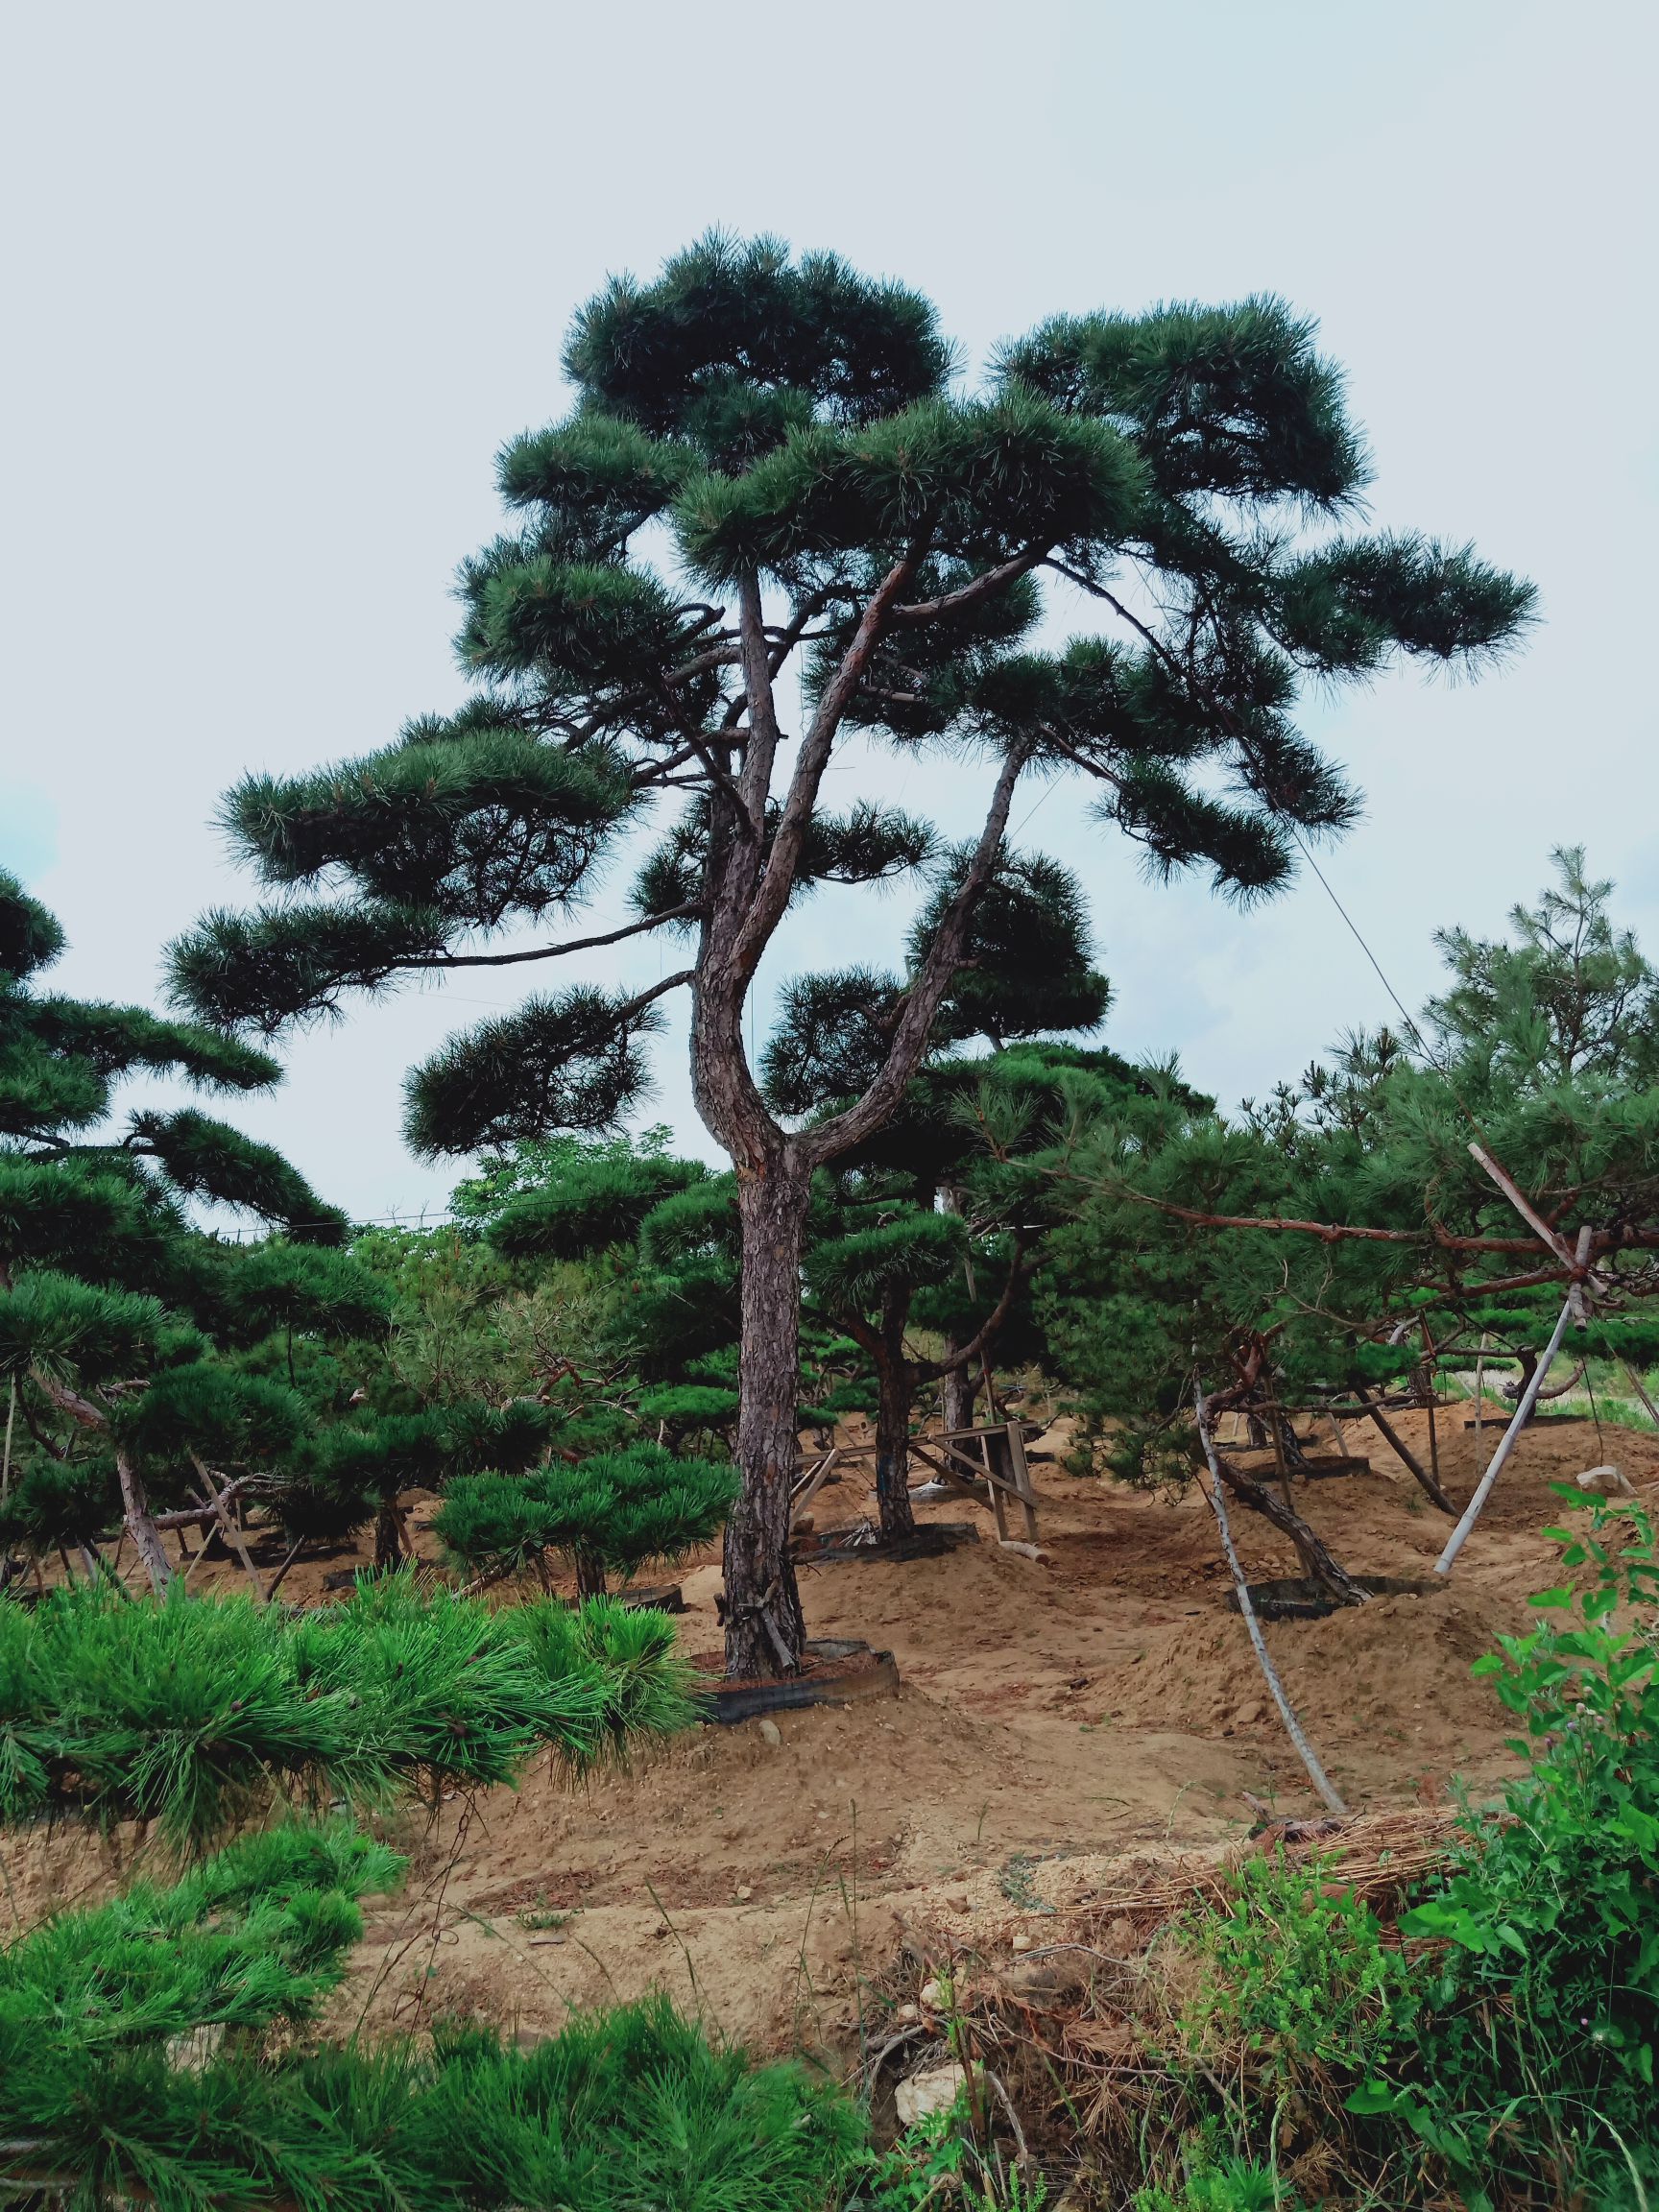 商品属性 品种名:造型松树 品种名:造型松树 高度33.